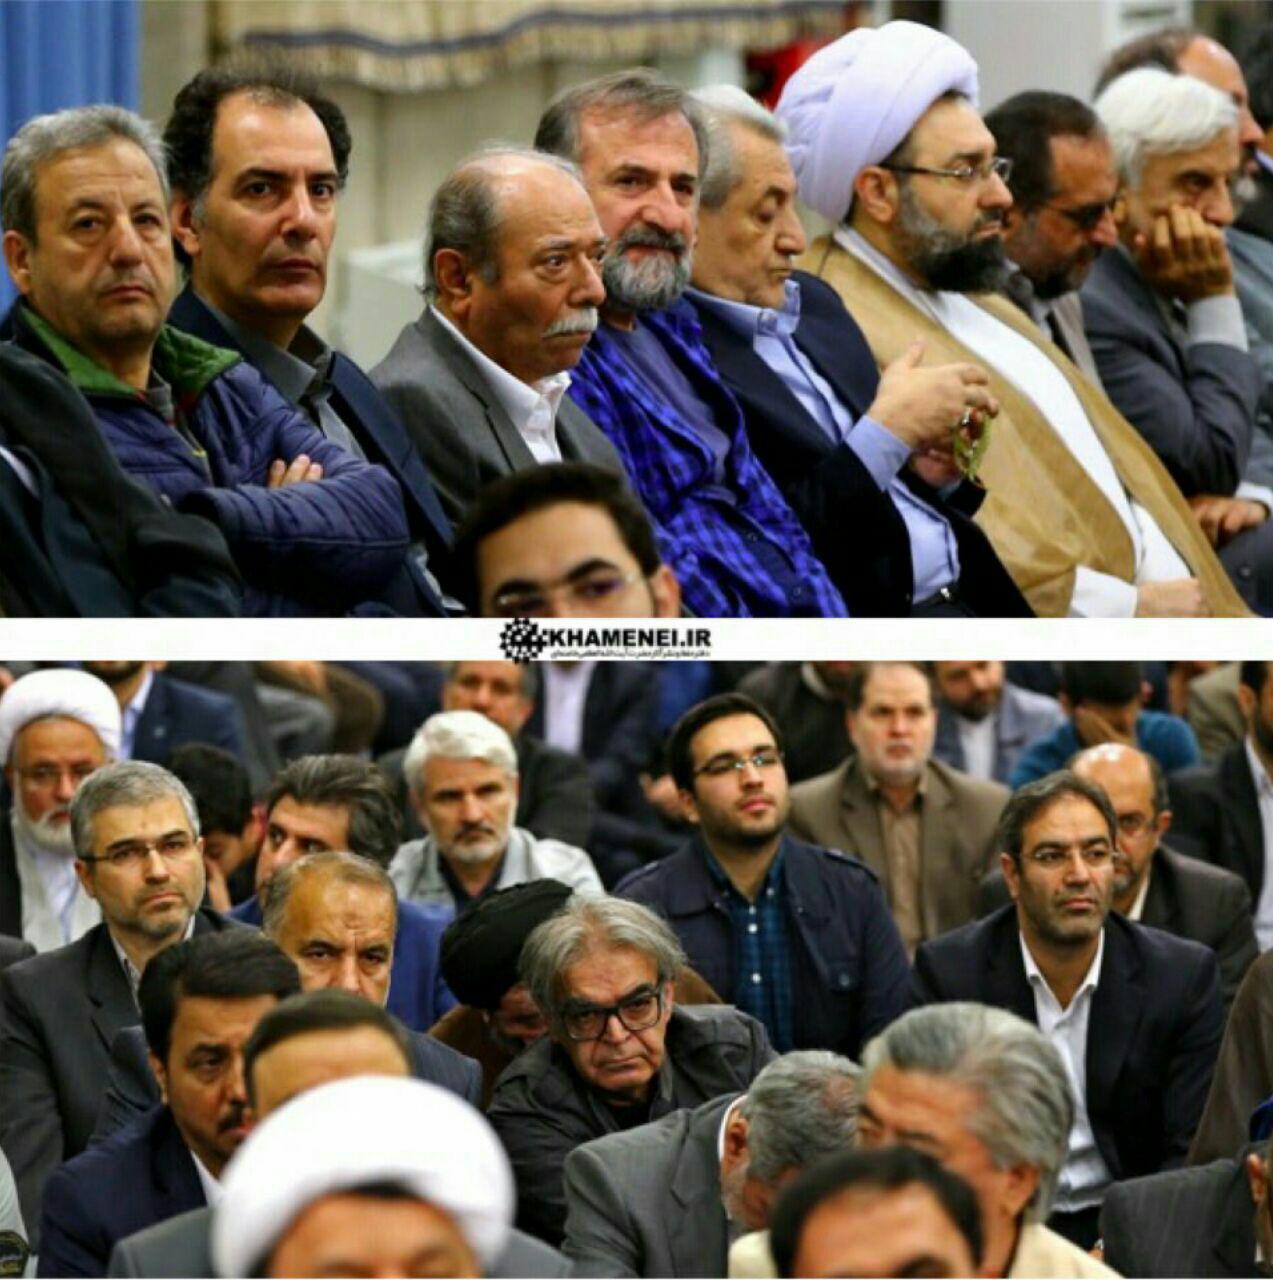 جمعی از هنرمندان در ديدار امروز با رهبرانقلاب/تصاویر